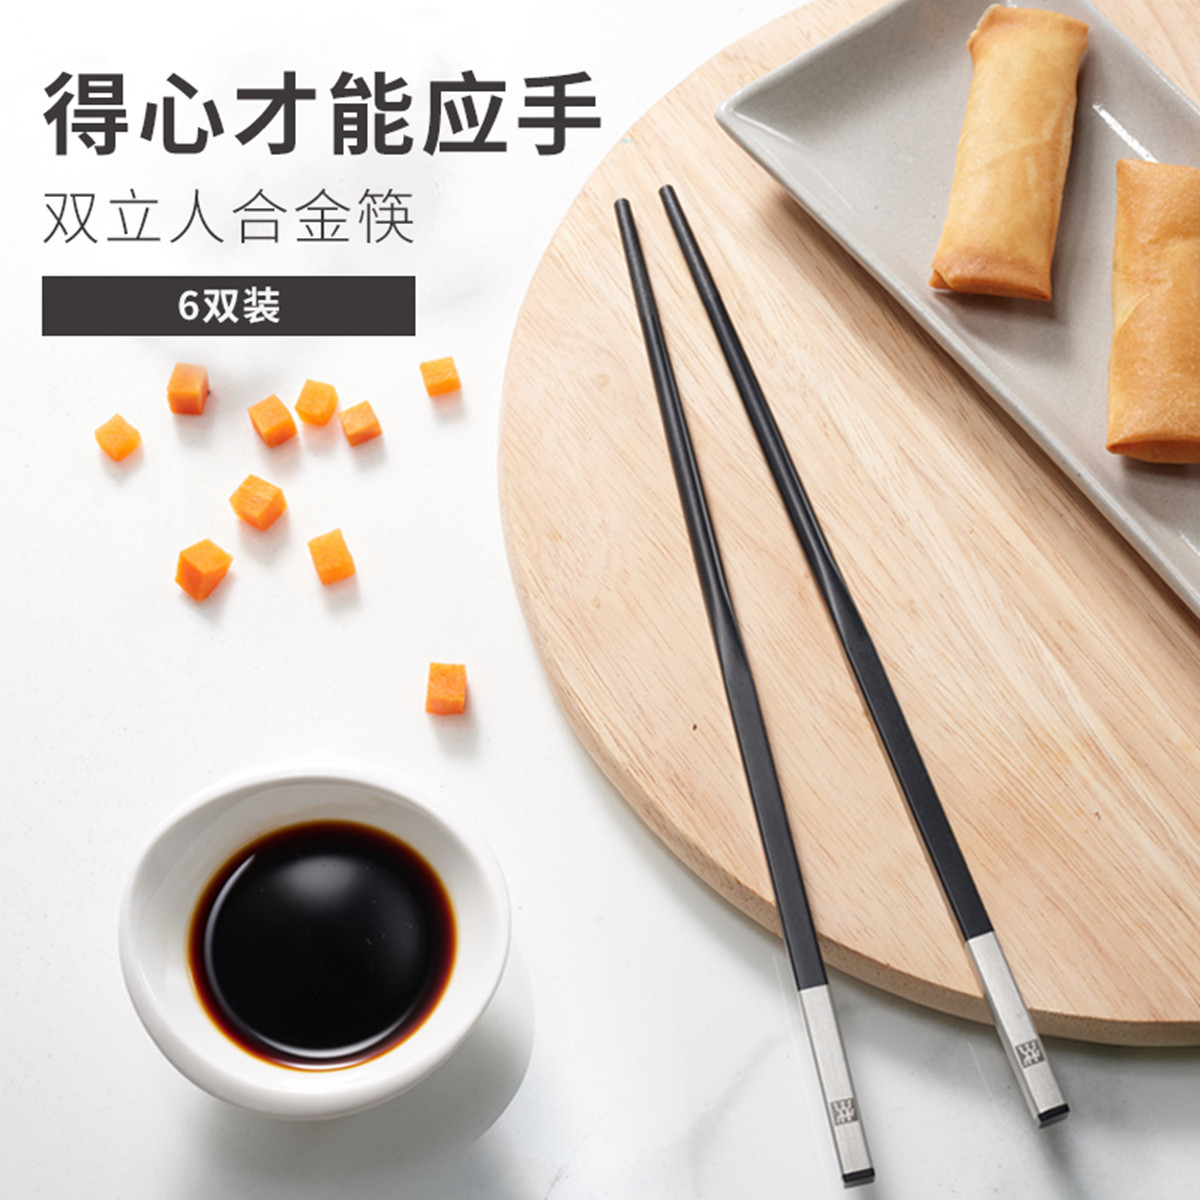 双立人specials 合金筷6双装筷子